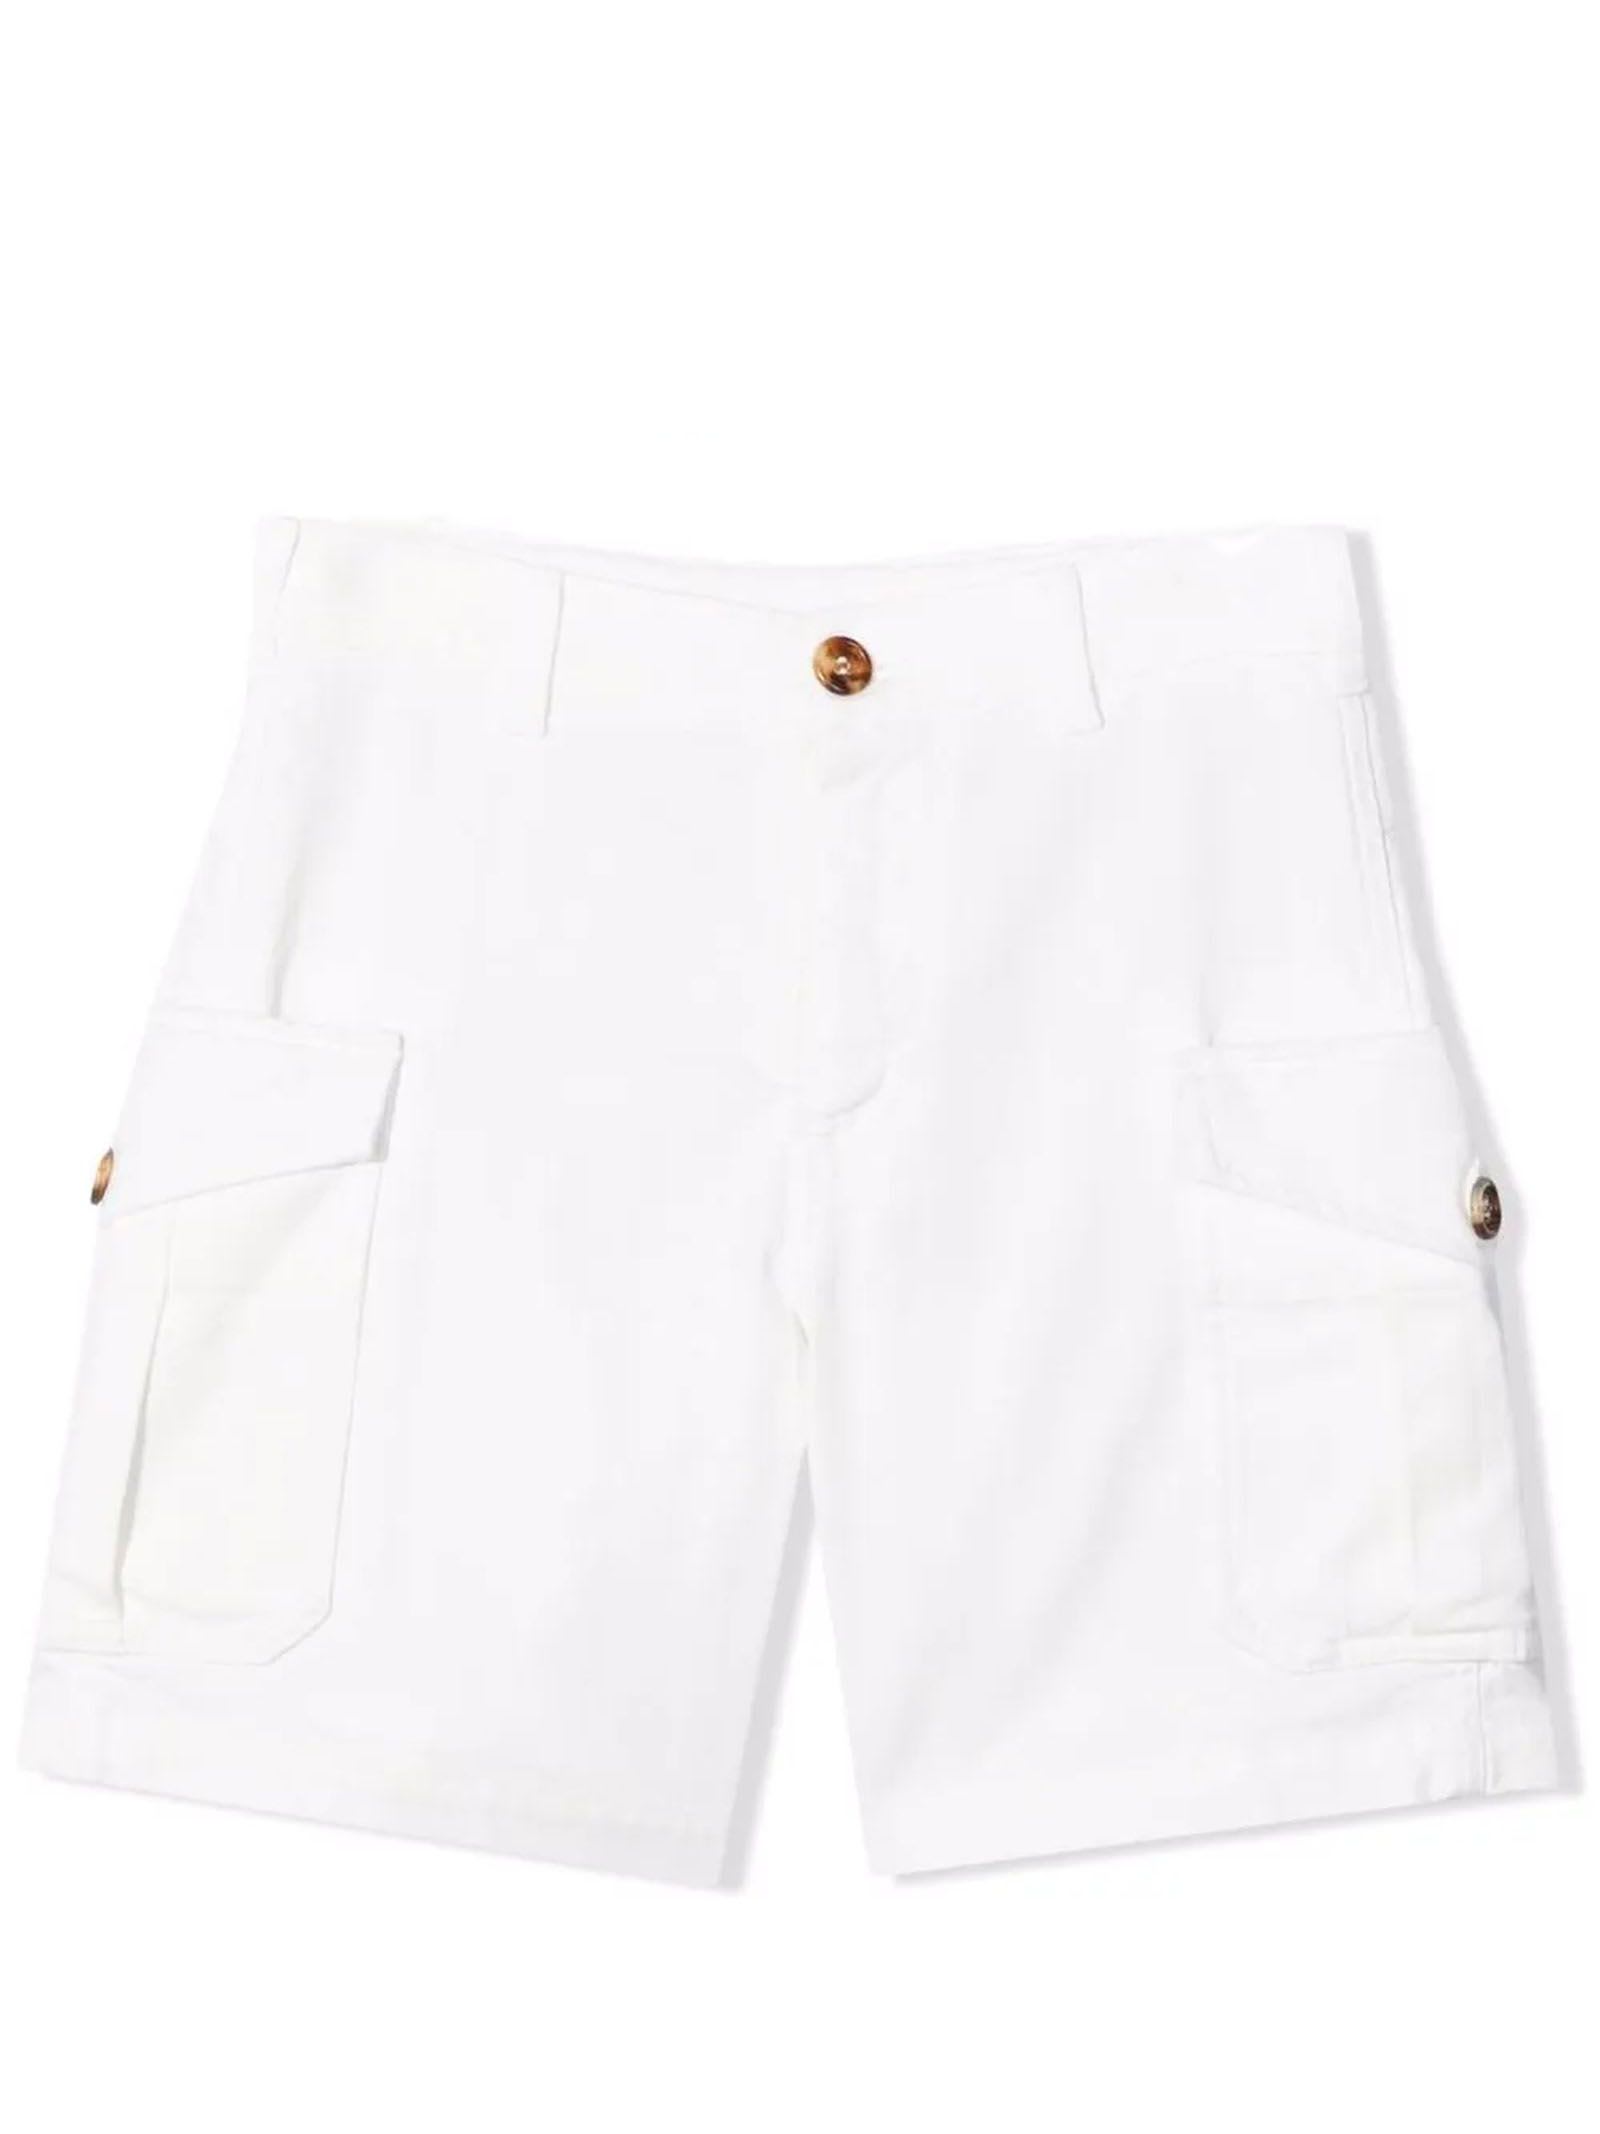 Brunello Cucinelli White Cotton Shorts